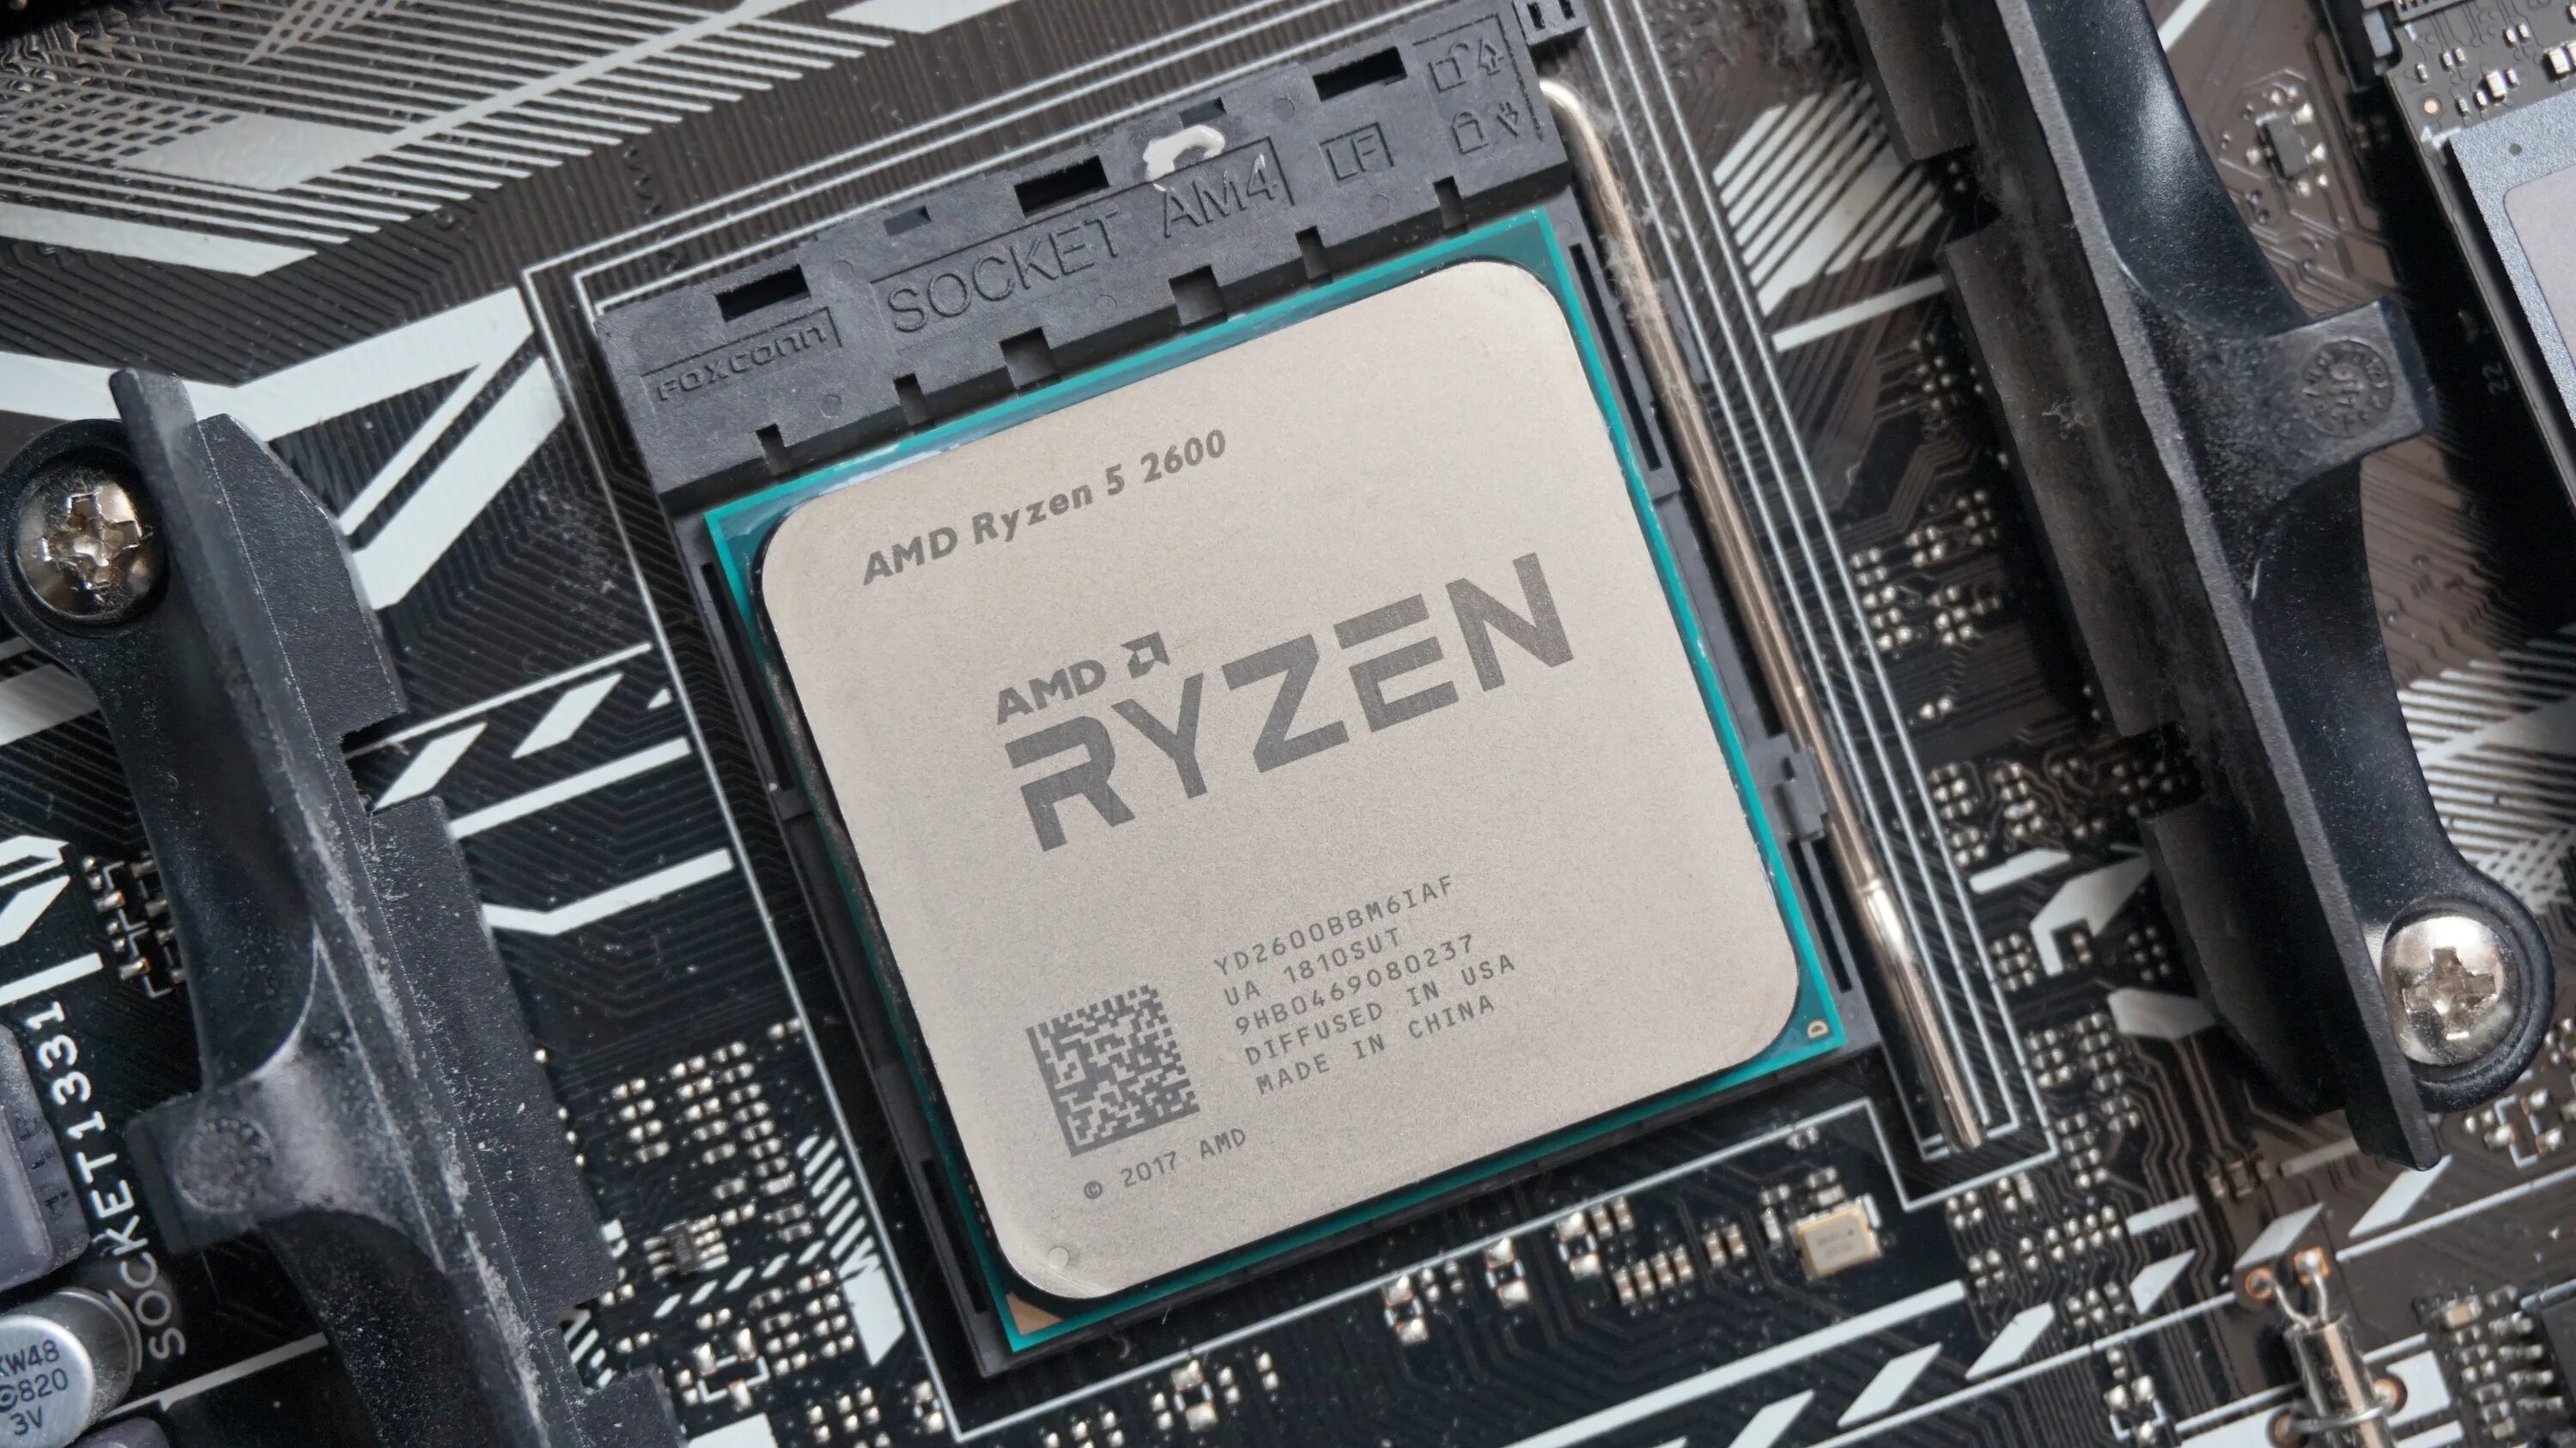 Amd ryzen 5 2600 цена. Ryzen 5 2600. Процессор АМД 5 2600. Процессор AMD Ryzen 5 2600 am4. AMD процессор r5 2600 OEM.